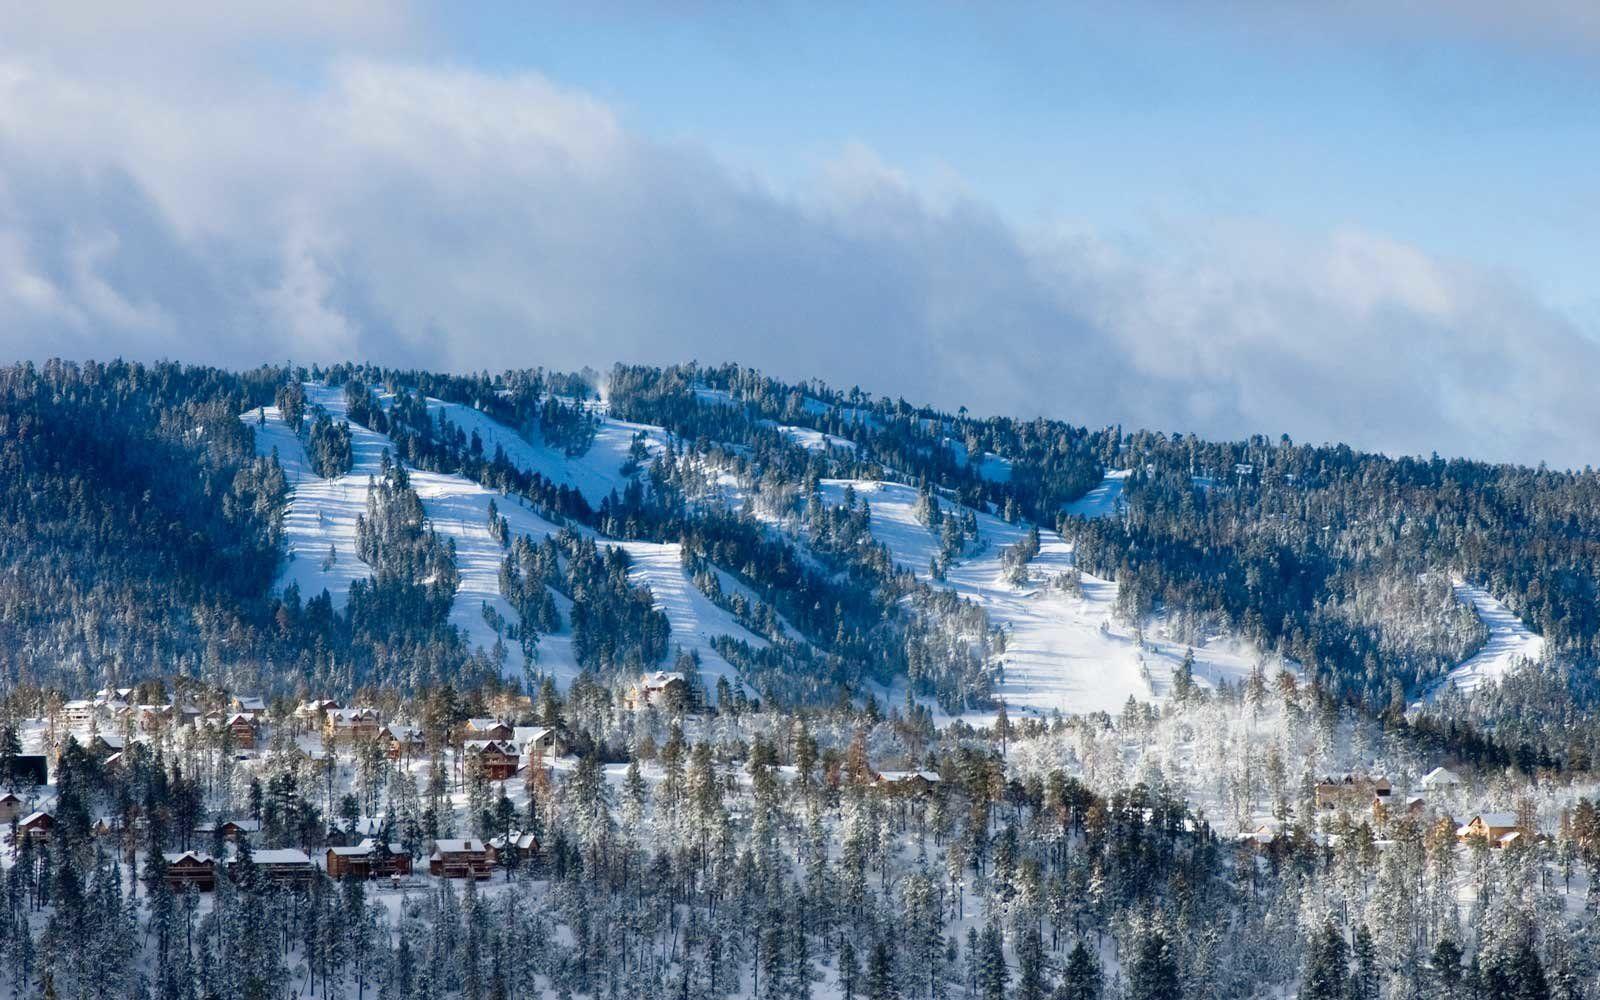 Snow Summit Big Bear Logo - Big Bear California — Cabins, Camping, and Skiing Tips | Travel + ...